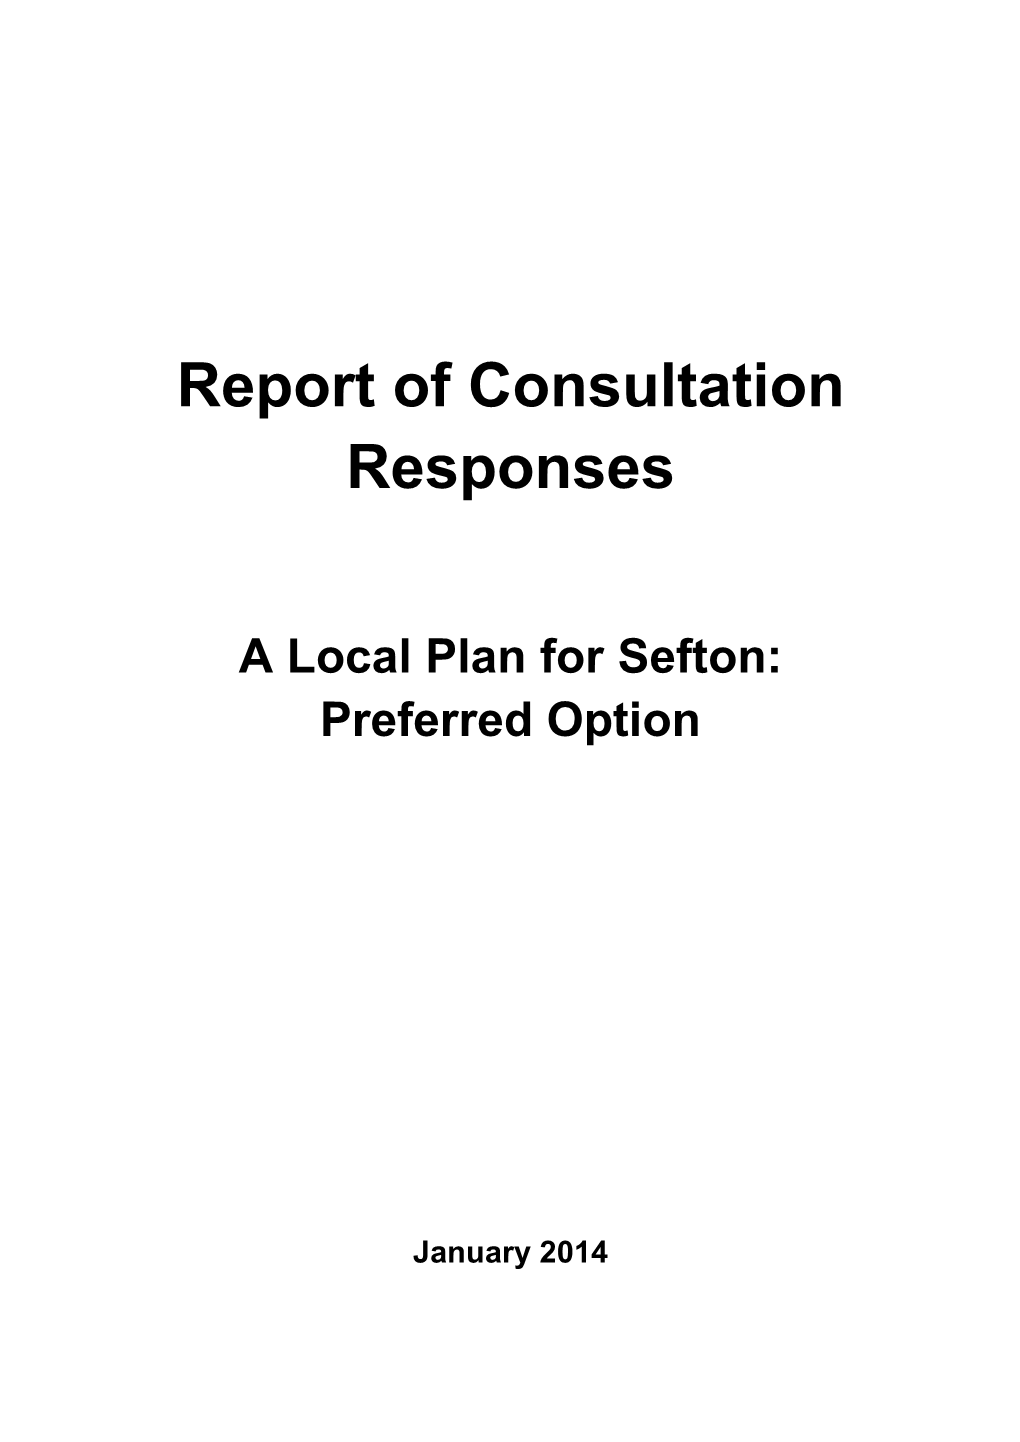 Report of Consultation Responses